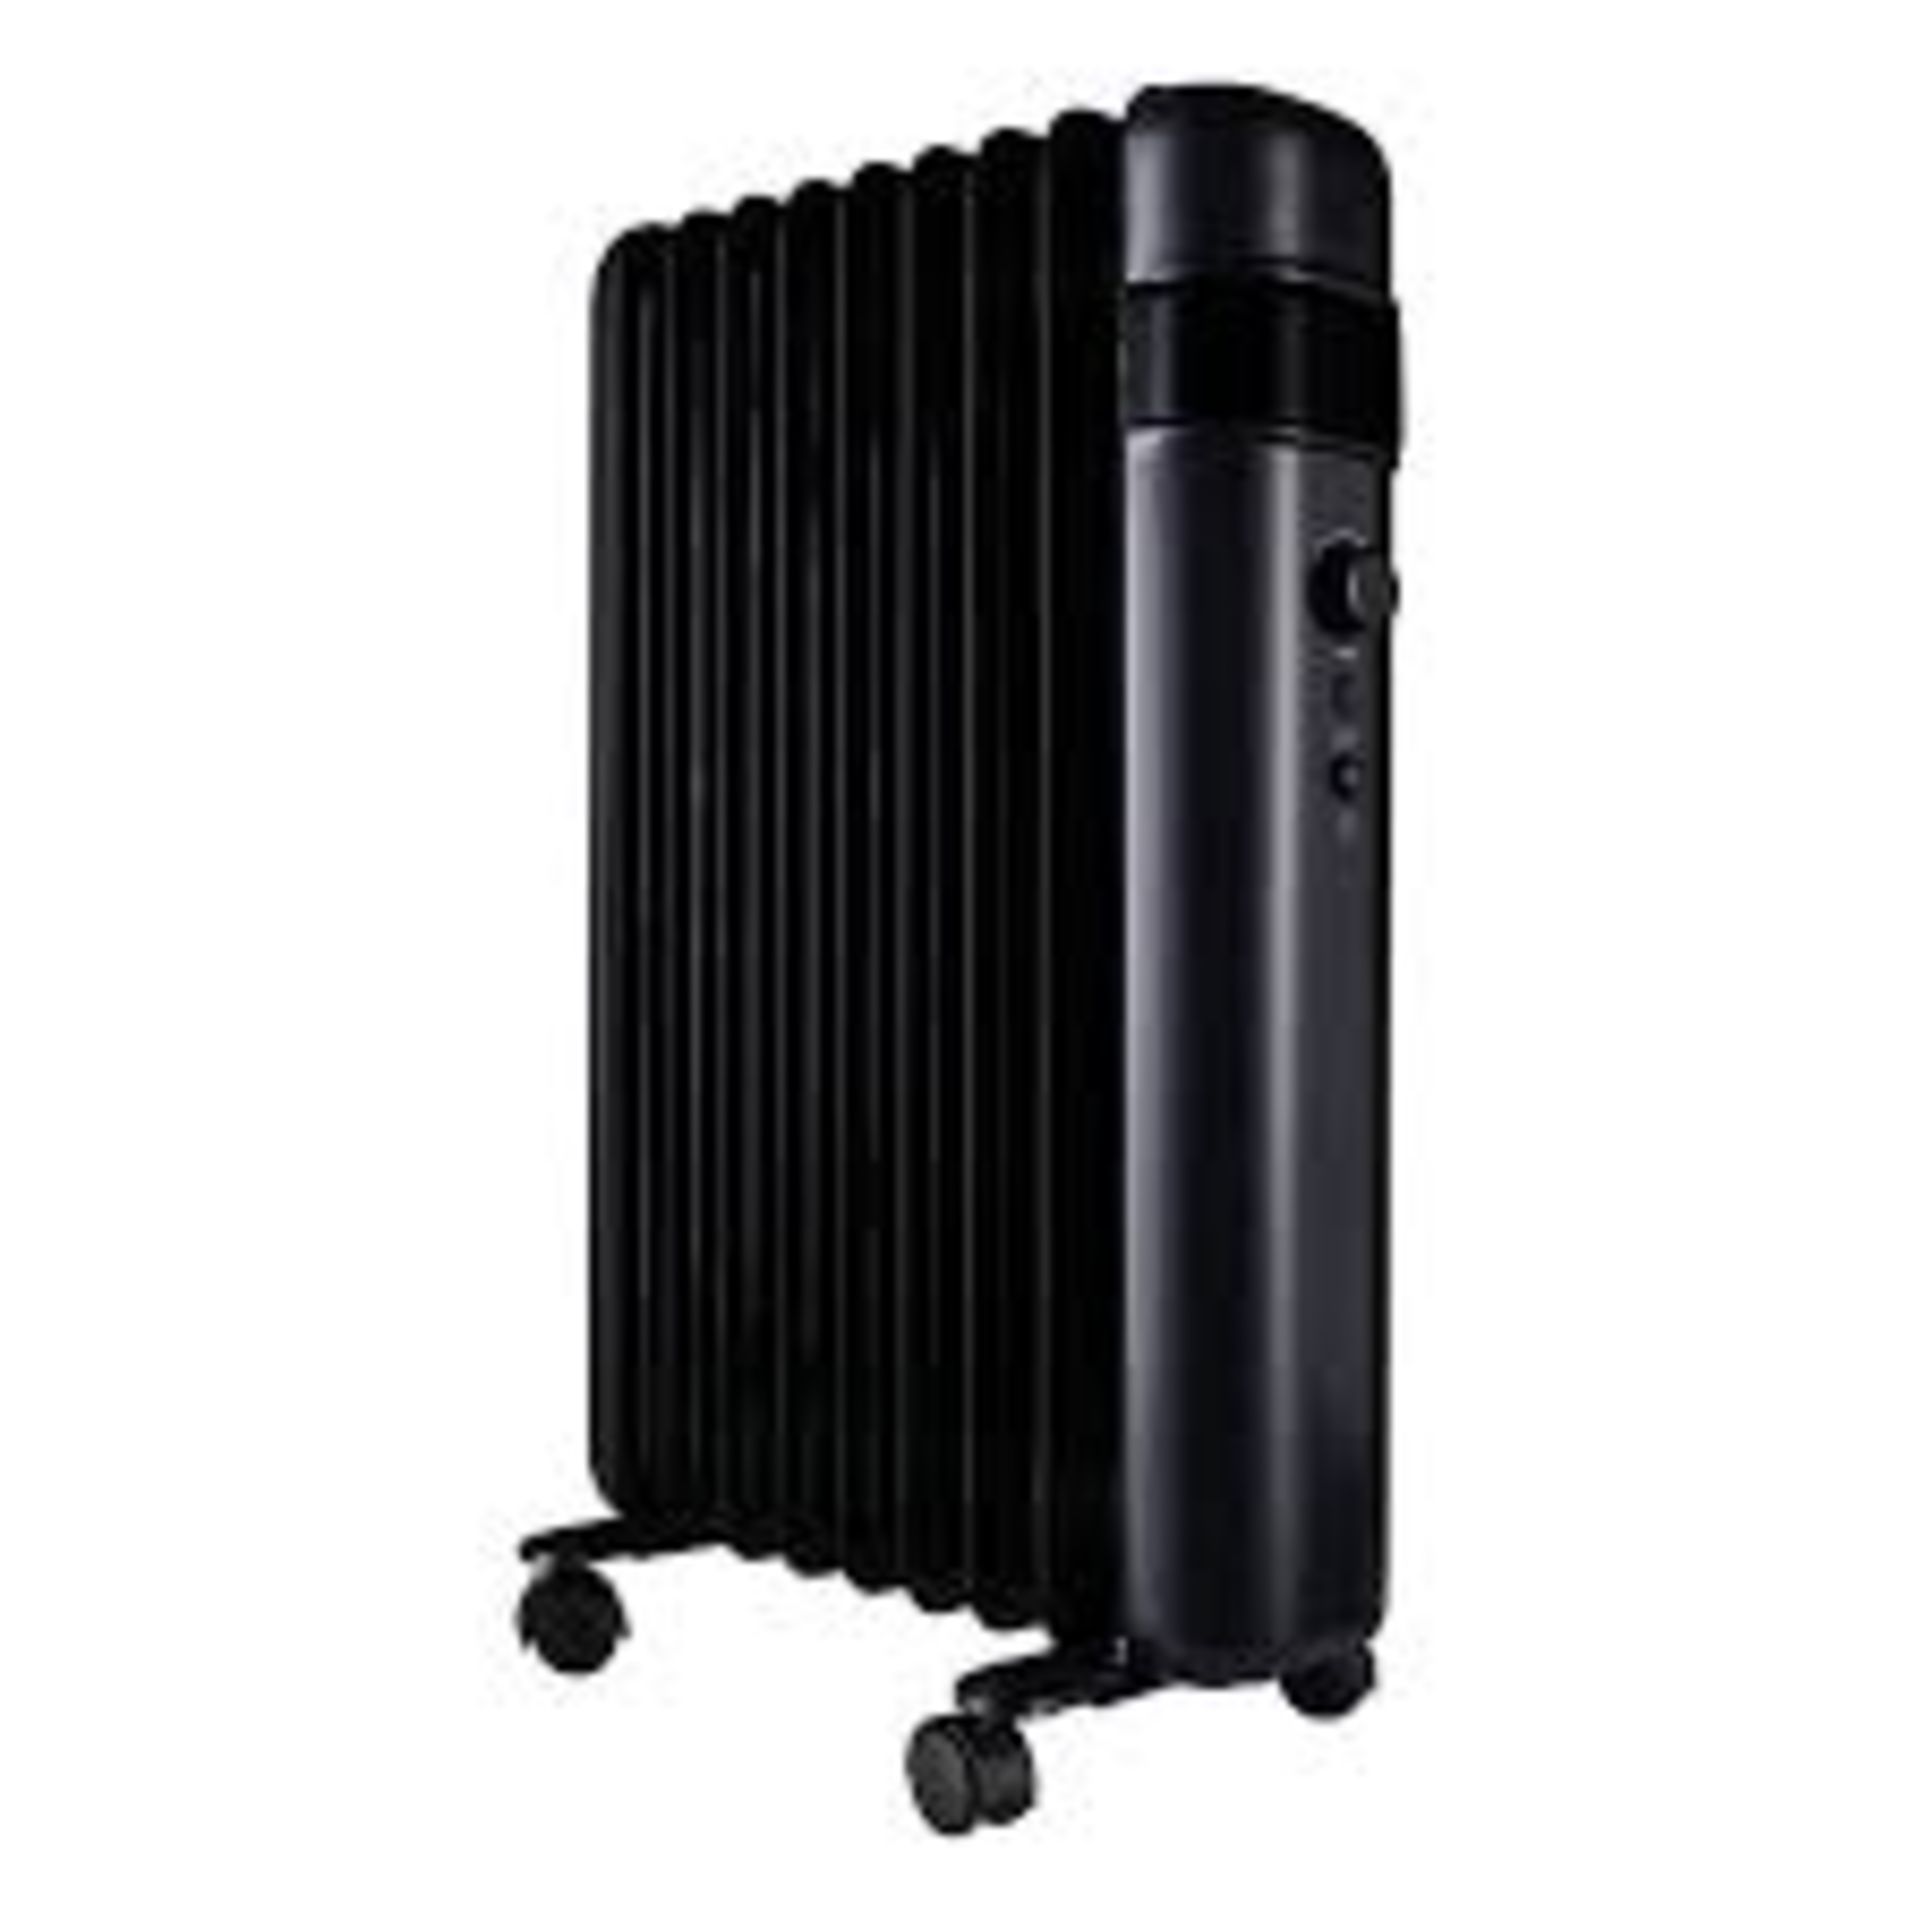 TCP Smart 220-240V 2kW Black Smart Oil-filled radiator. - PW.